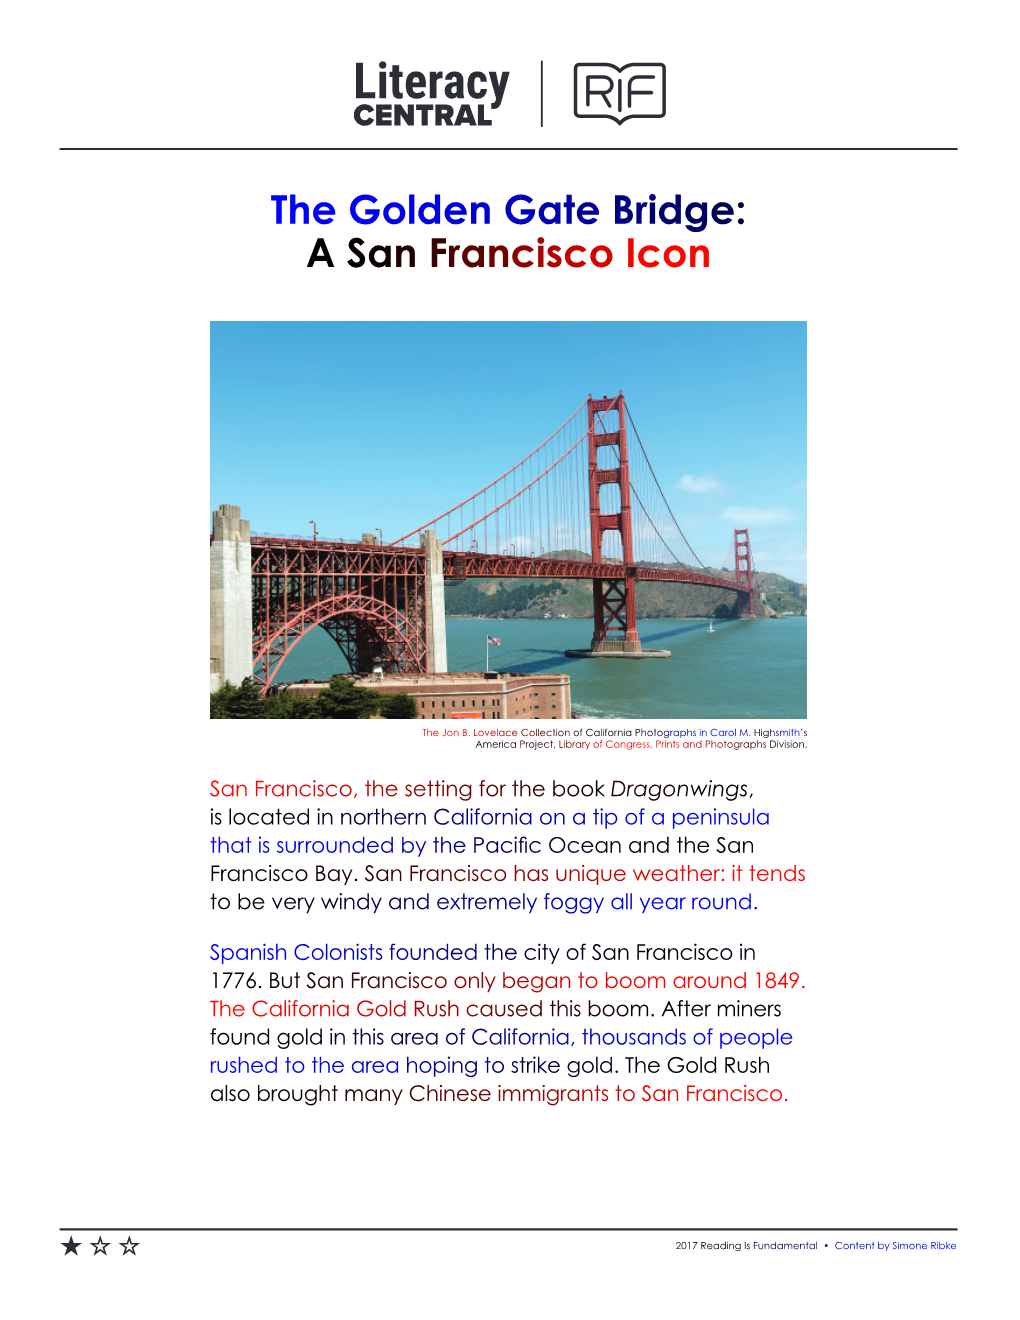 The Golden Gate Bridge: a San Francisco Icon